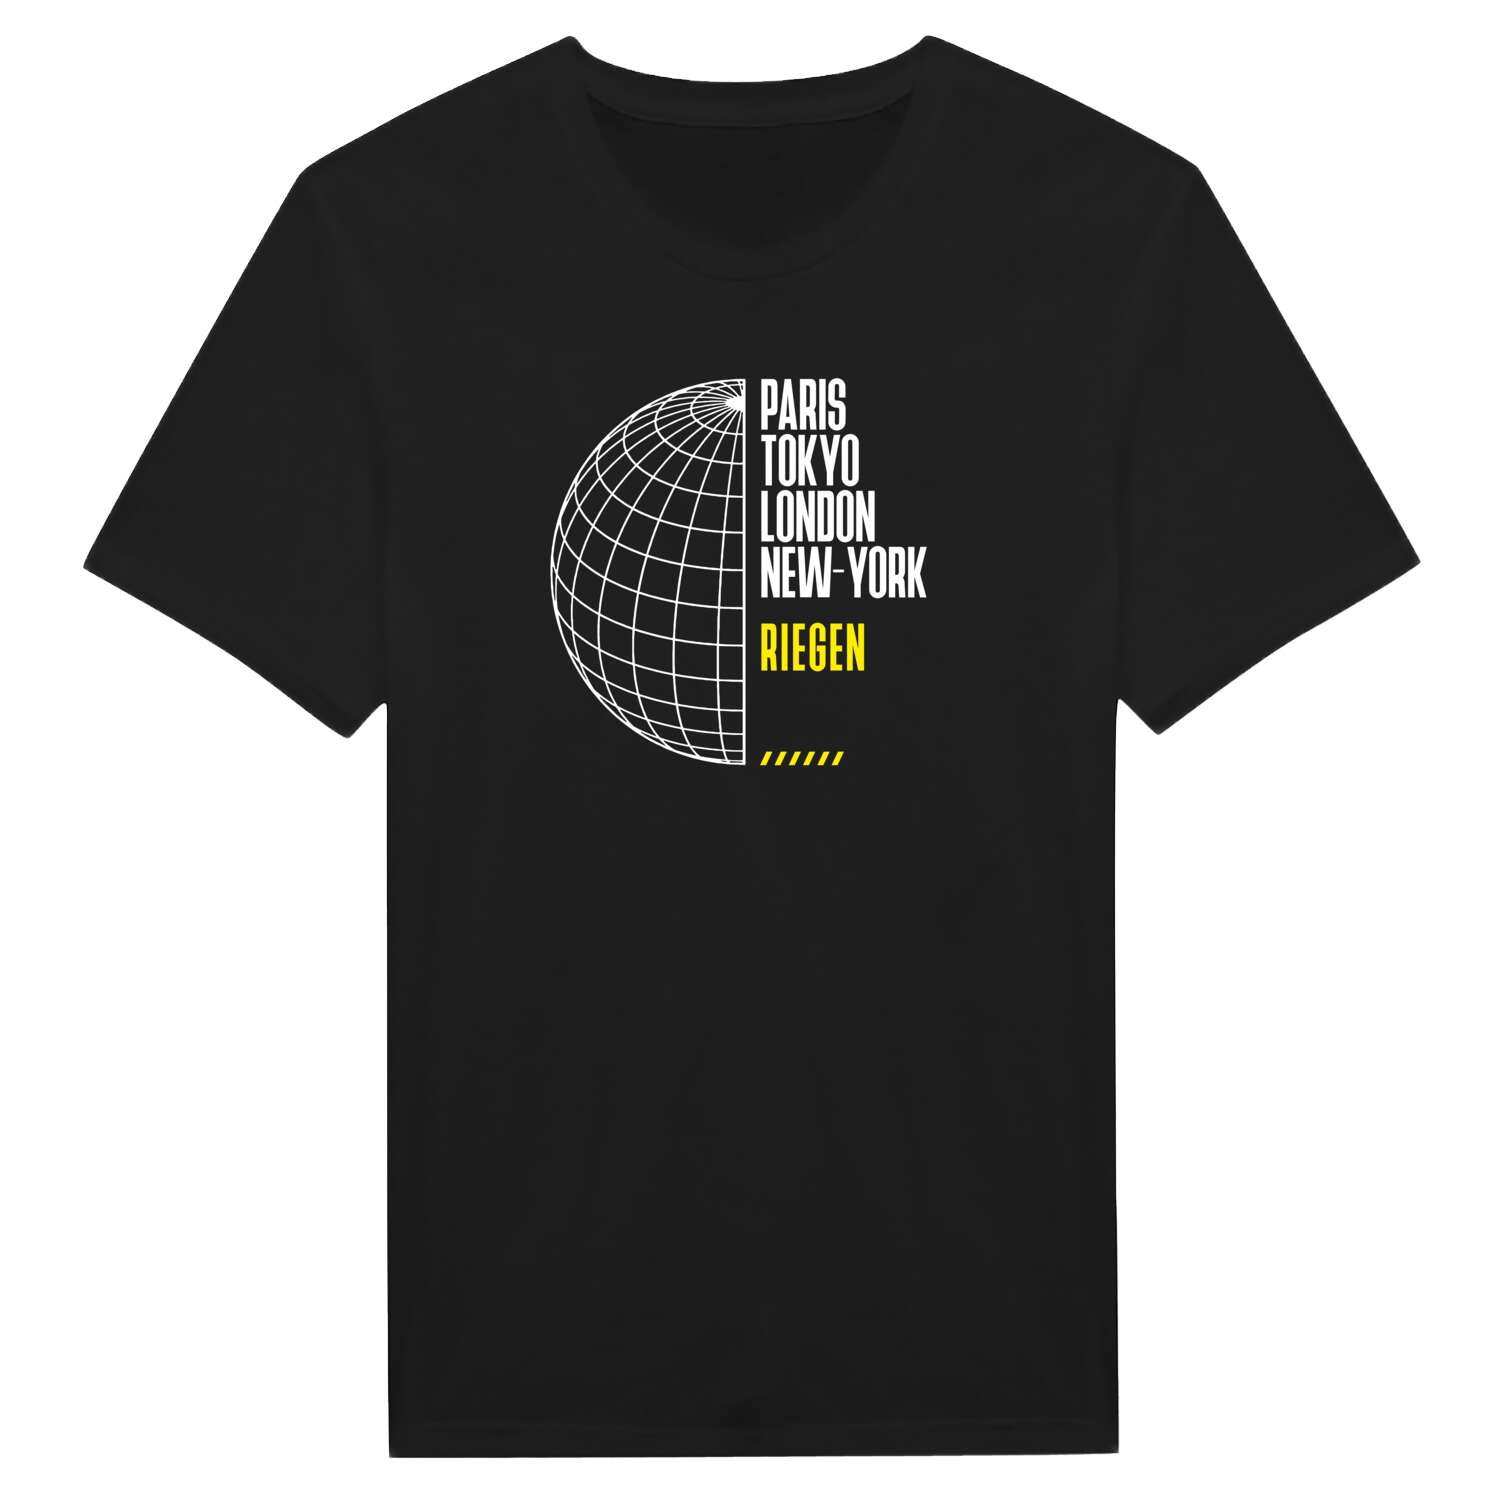 Riegen T-Shirt »Paris Tokyo London«